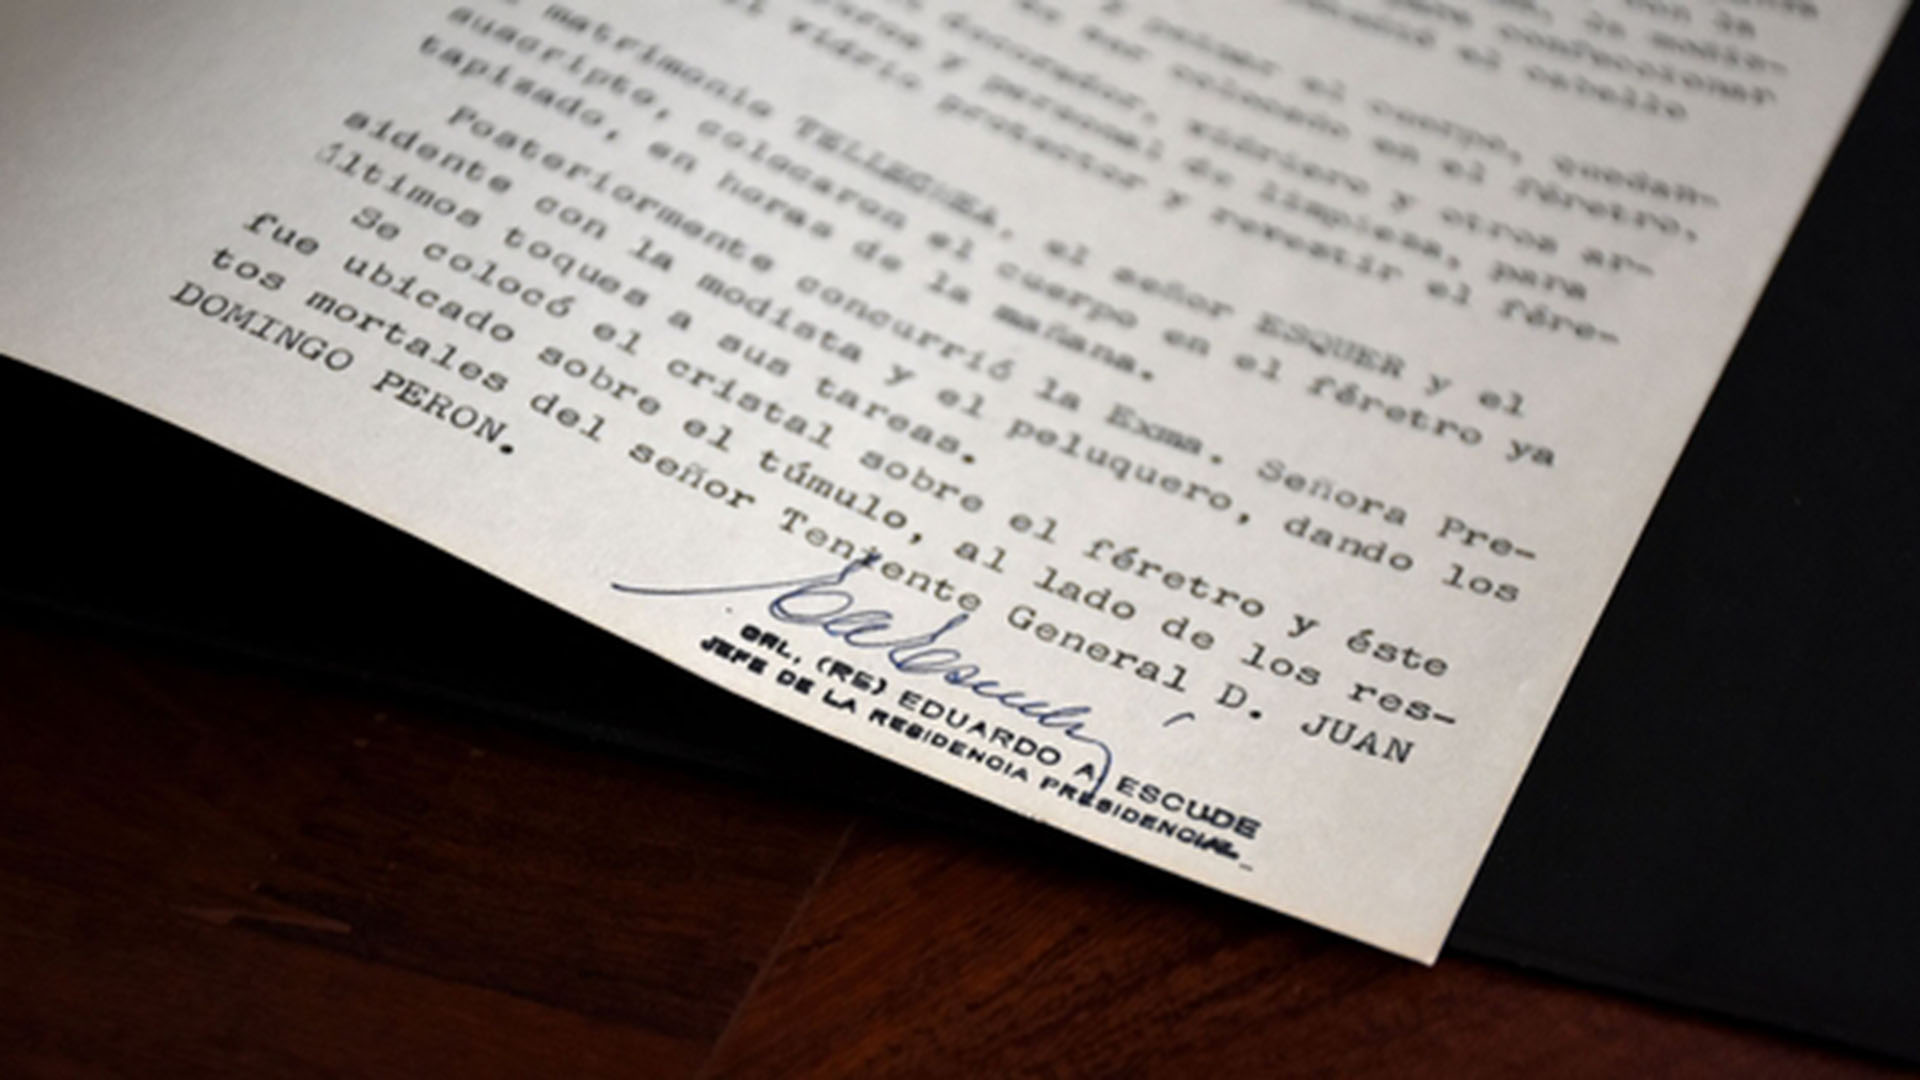 El coronel Eduardo Escudé firmó uno de los documentos oficiales tras asistir a todo el proceso de restauración del cadáver de Evita